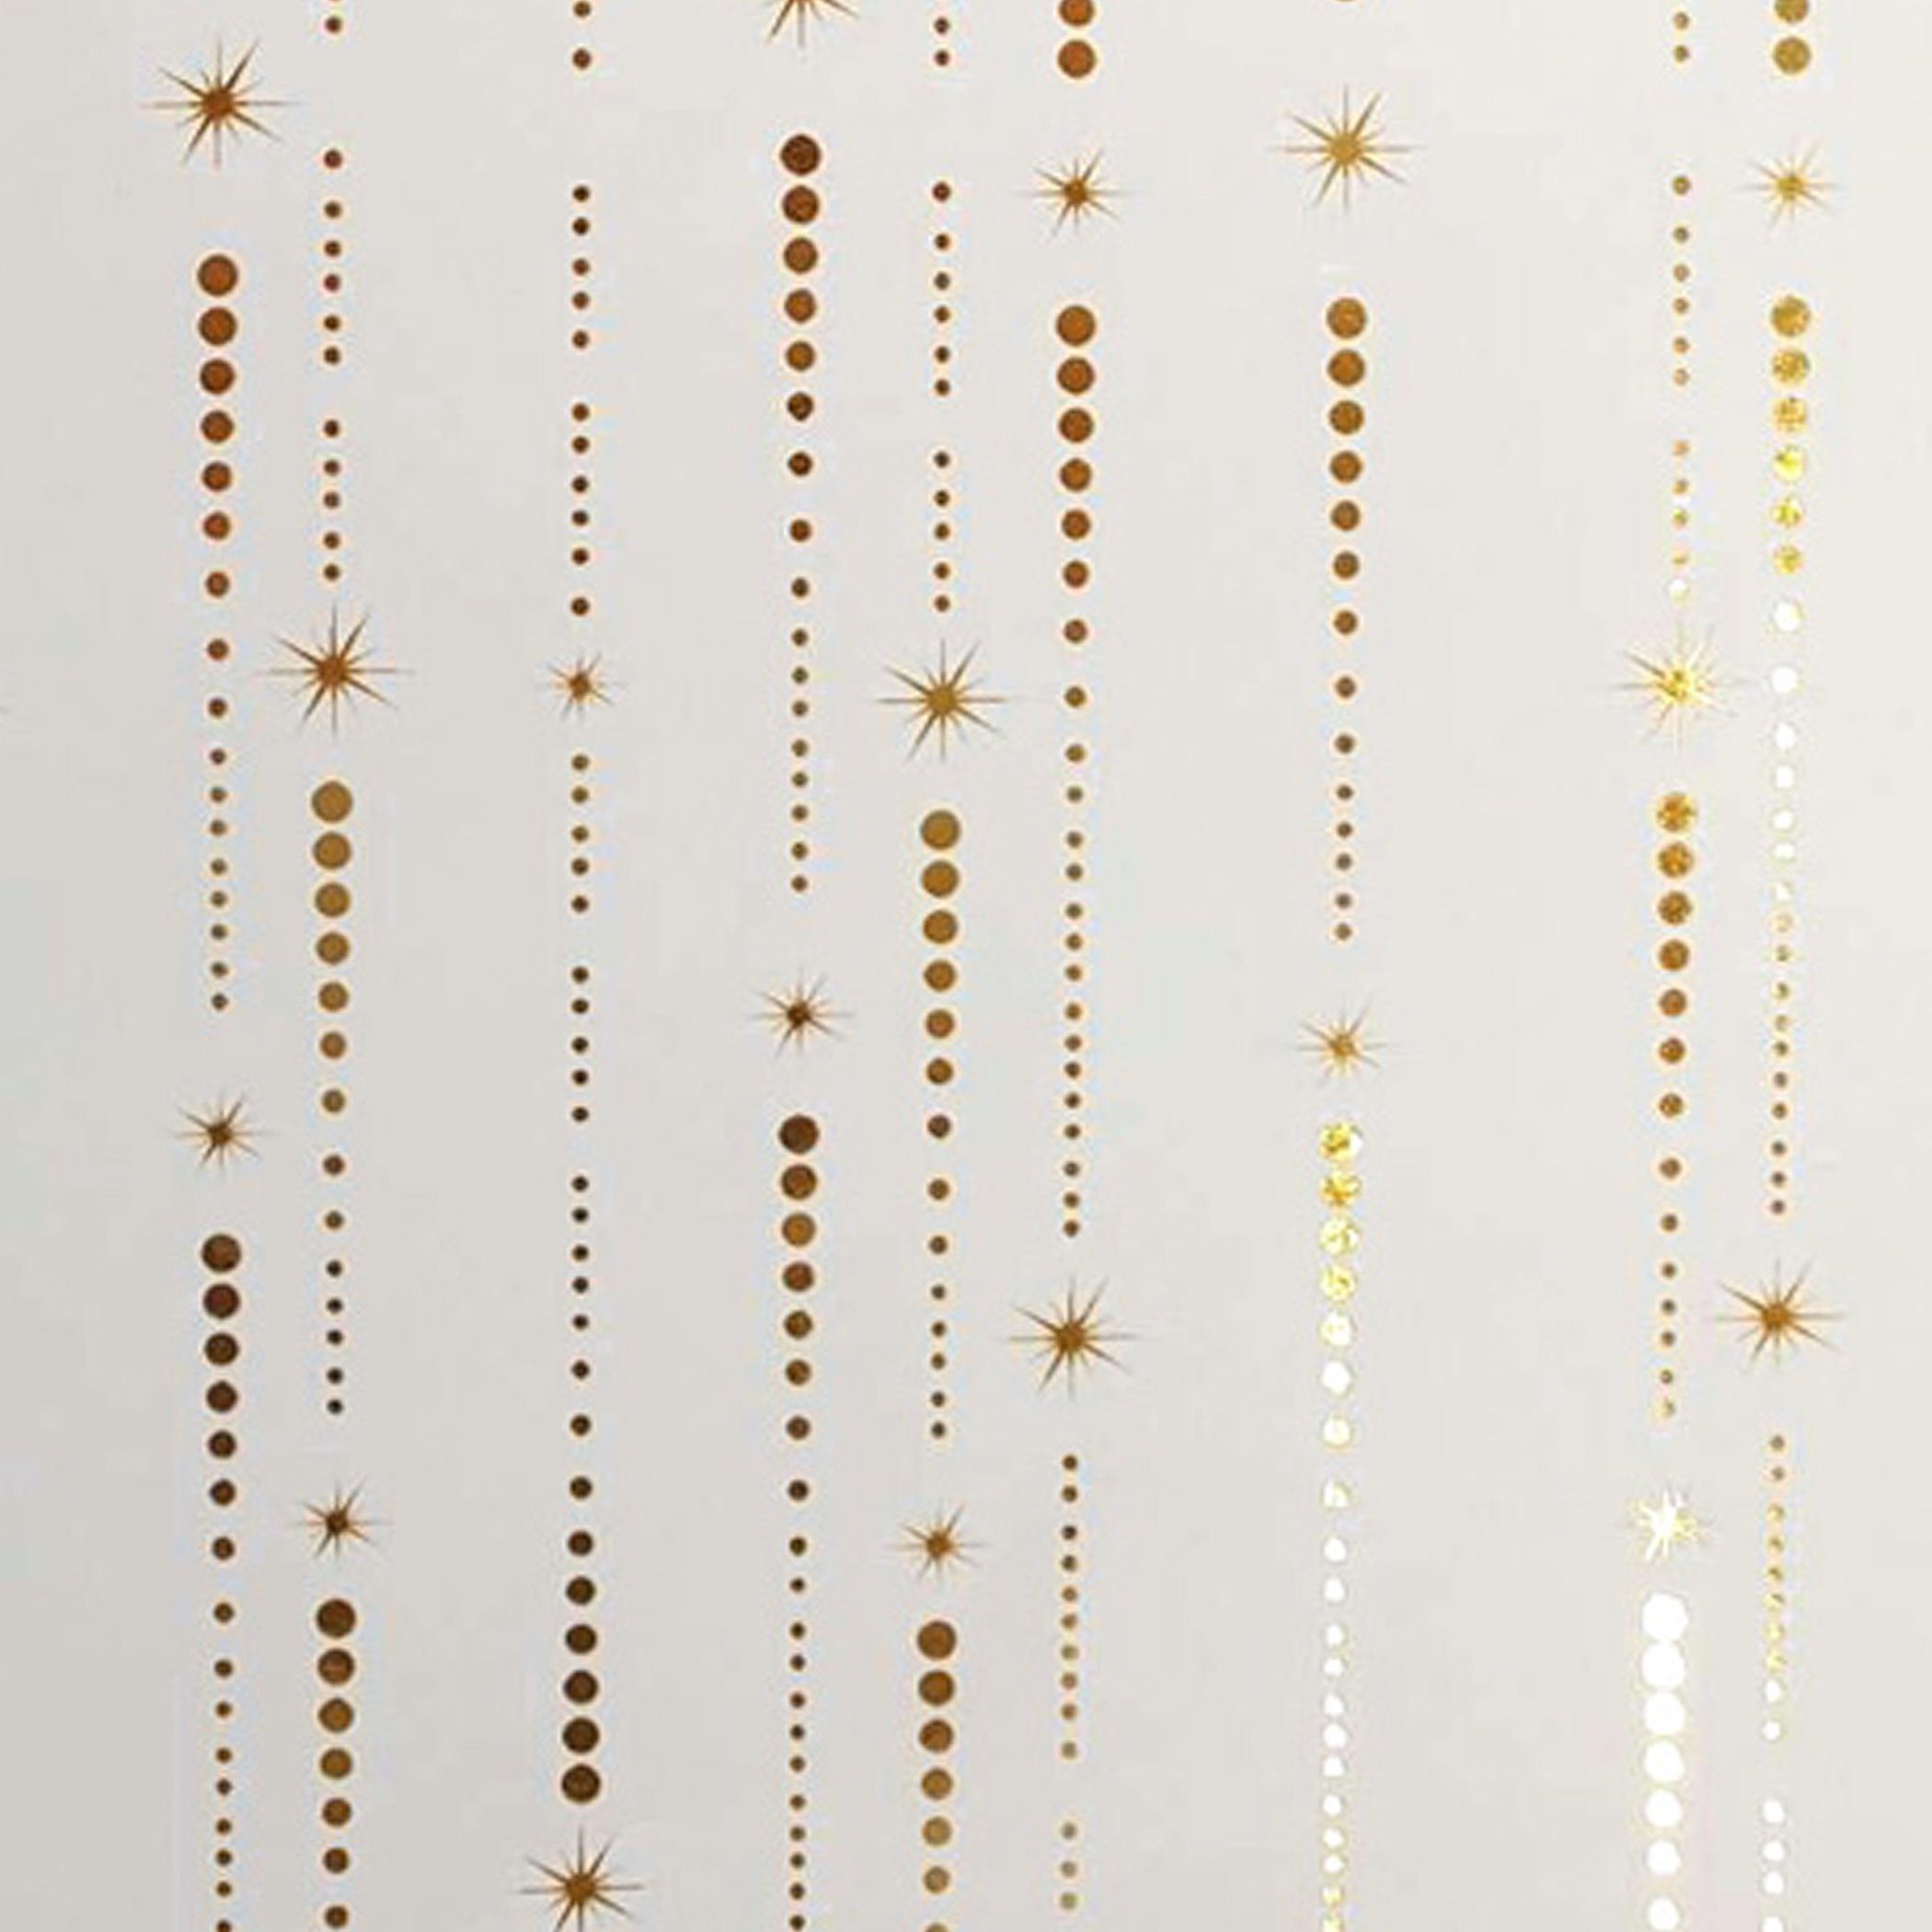 Sternschnuppen gold Geschenkpapier, Star Rolle weiß / 2m 70cm Muster x Geschenkpapier